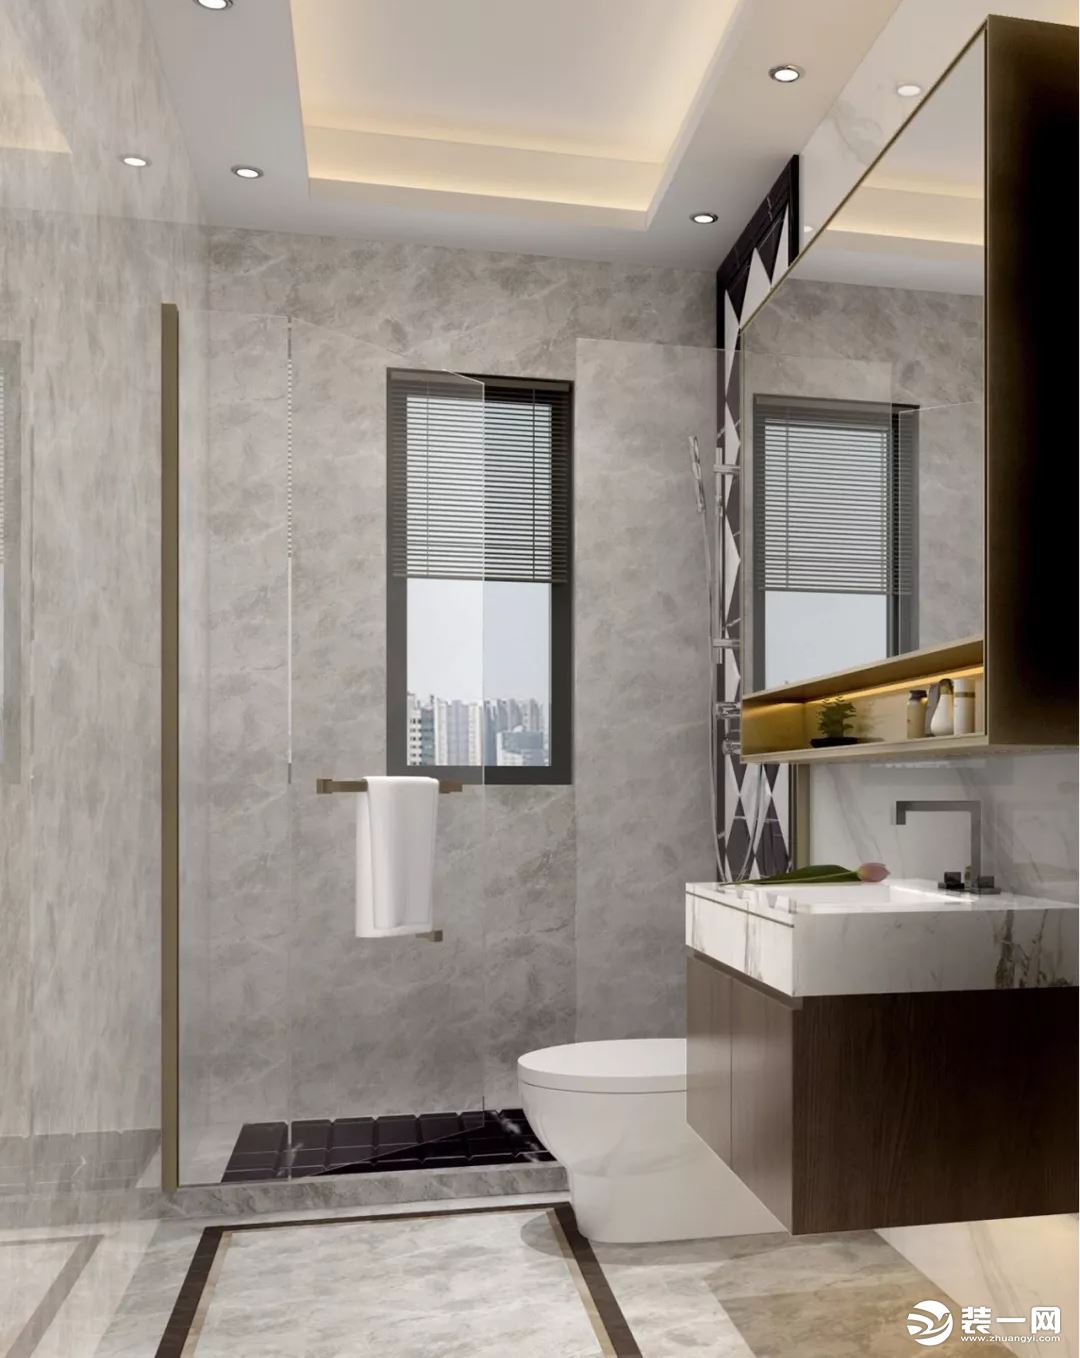 惠州居众整装设计院新中式浴室案例